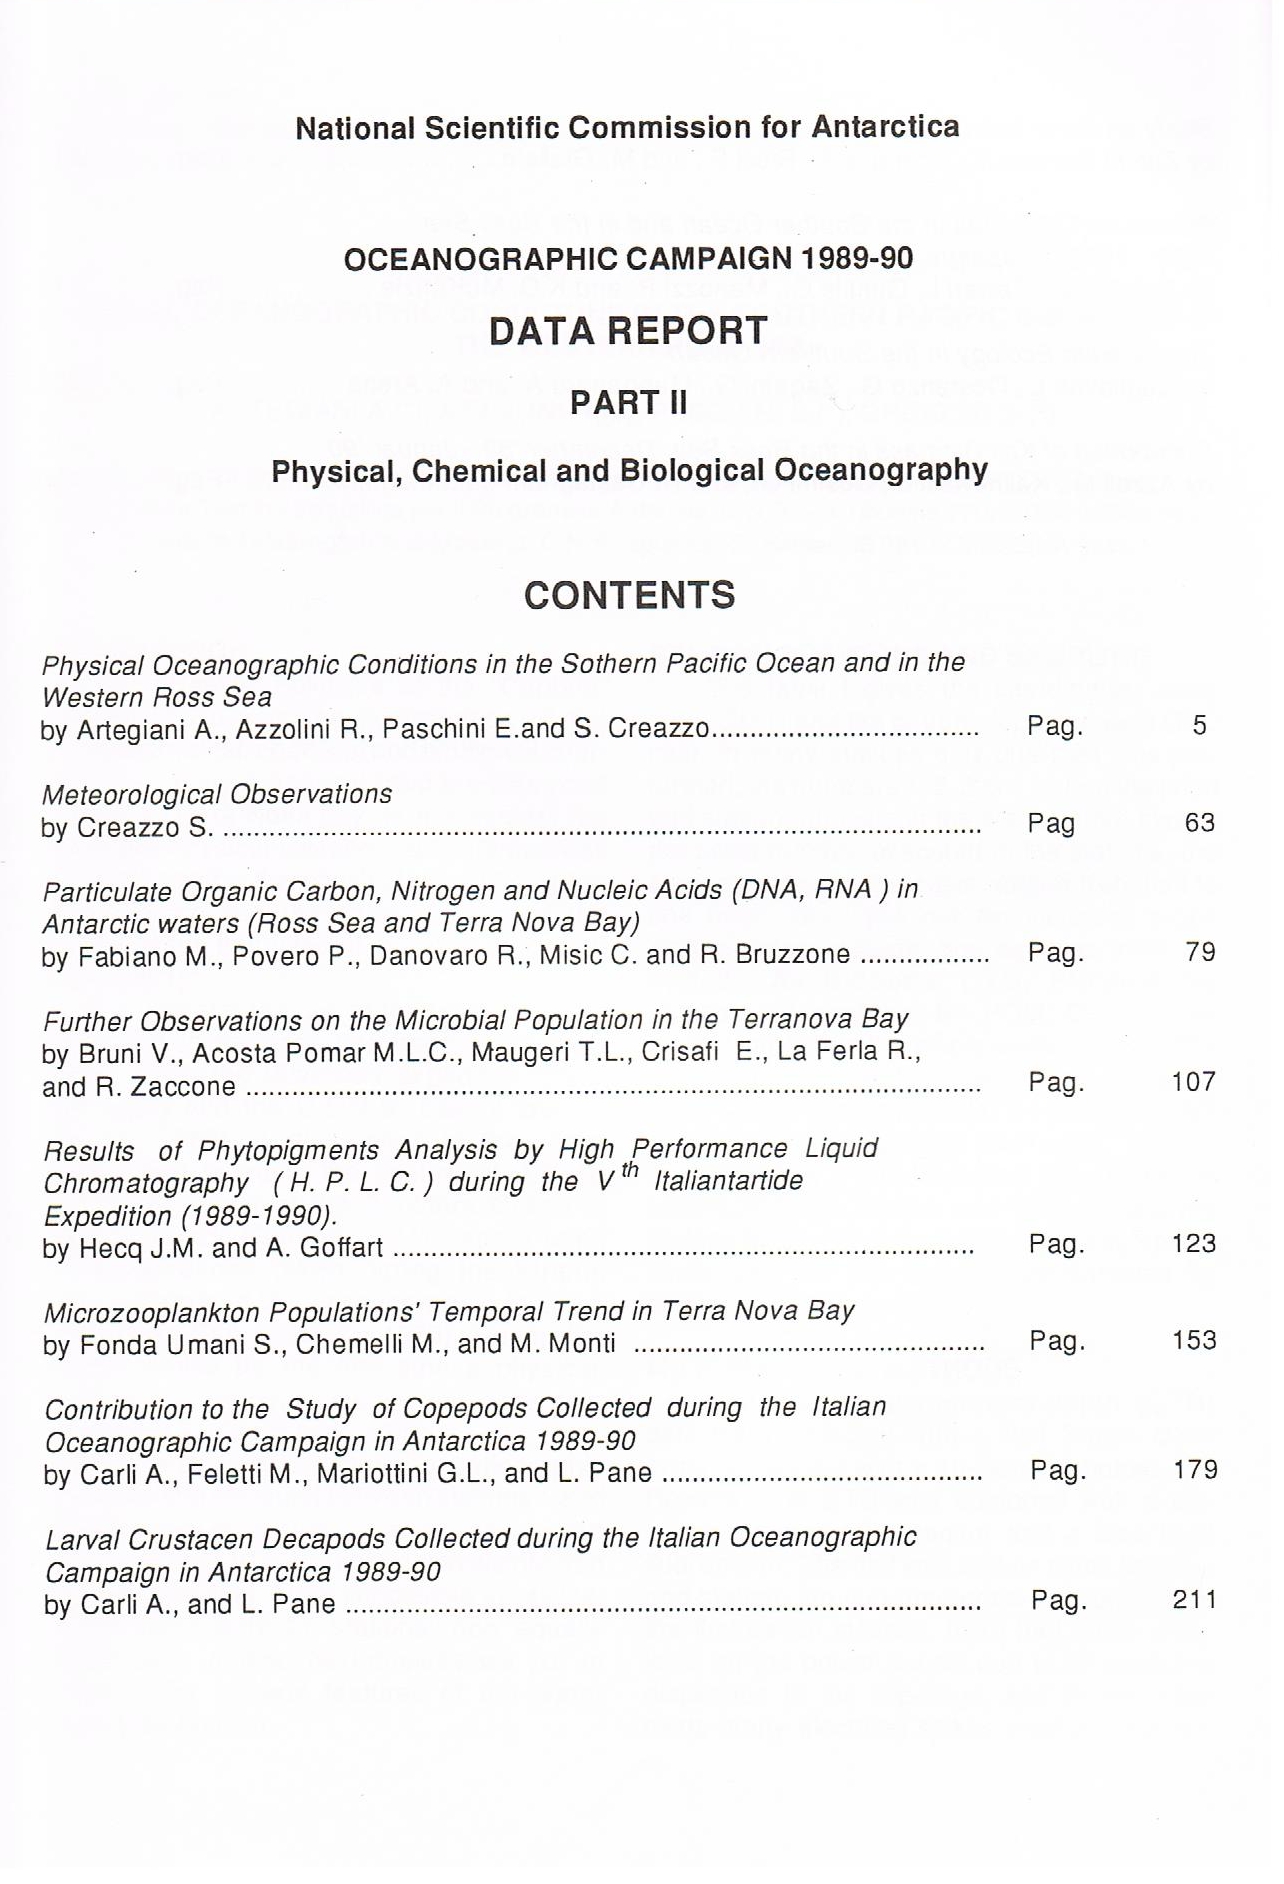 data report 89-90-2-indice1